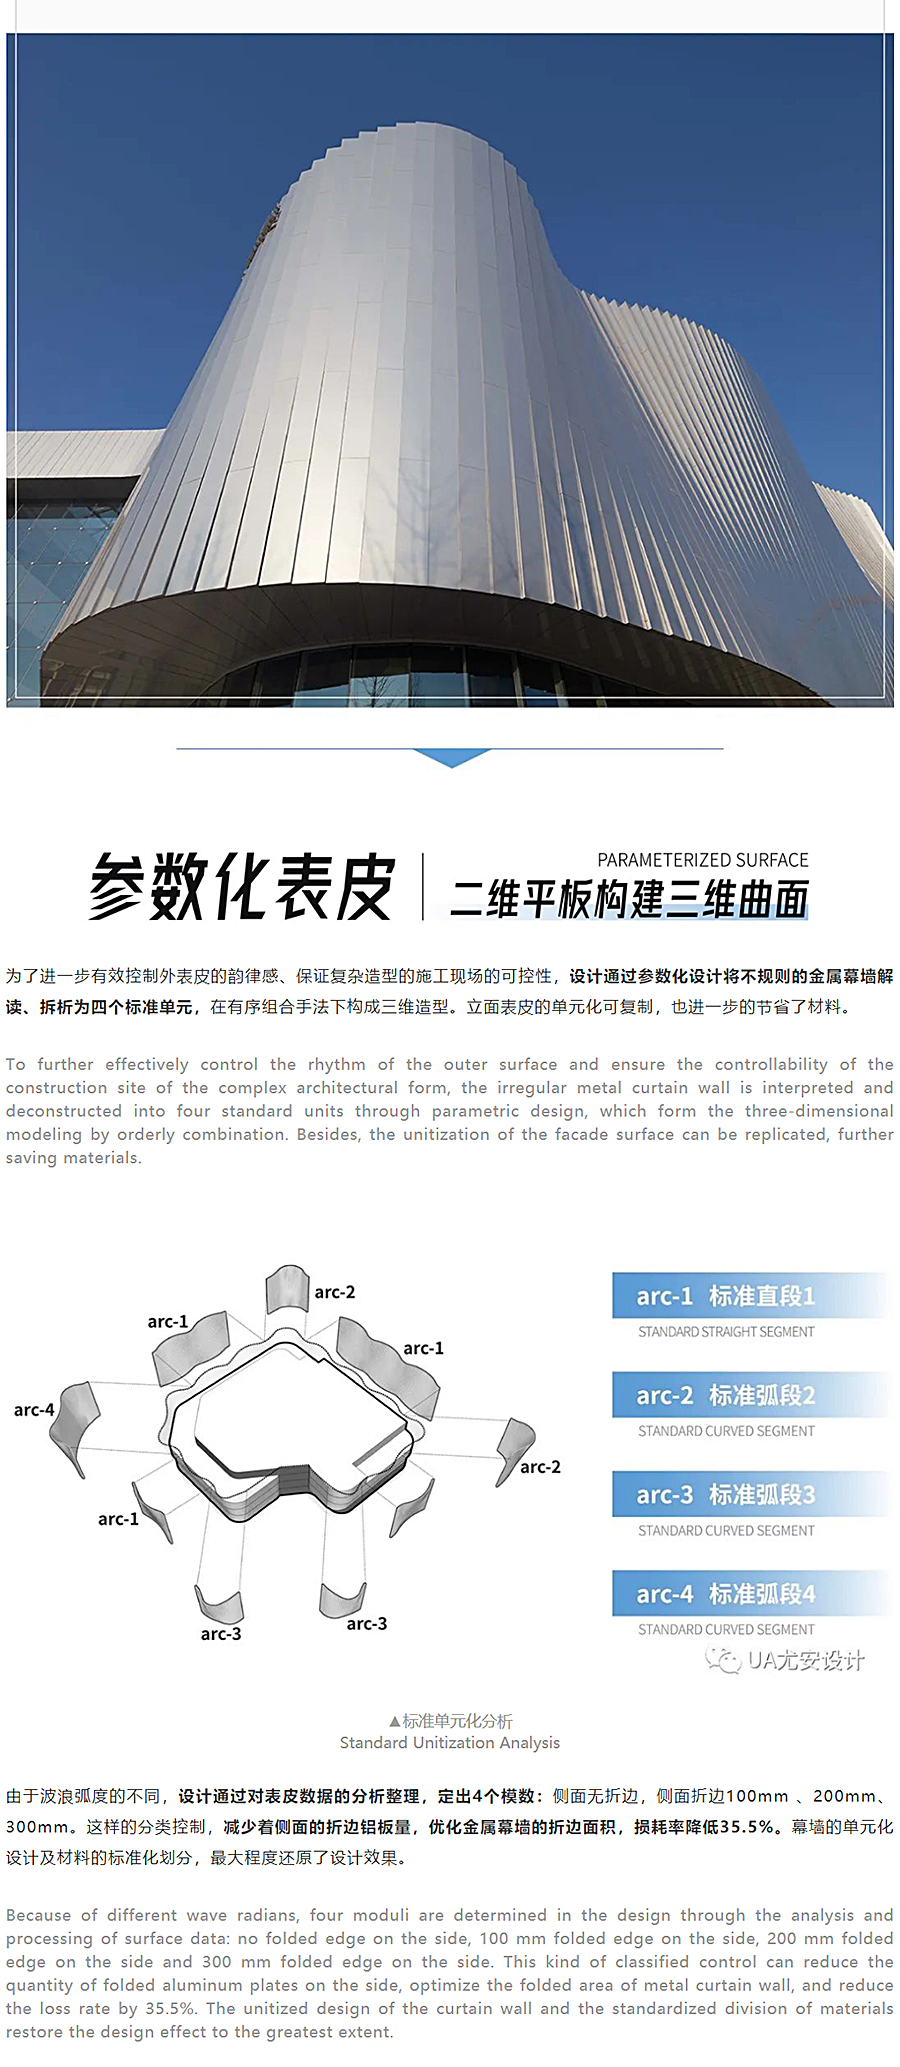 虚拟之筑的有机新生-_-南昌VR科创城VR展示中心_0005_图层-6.jpg